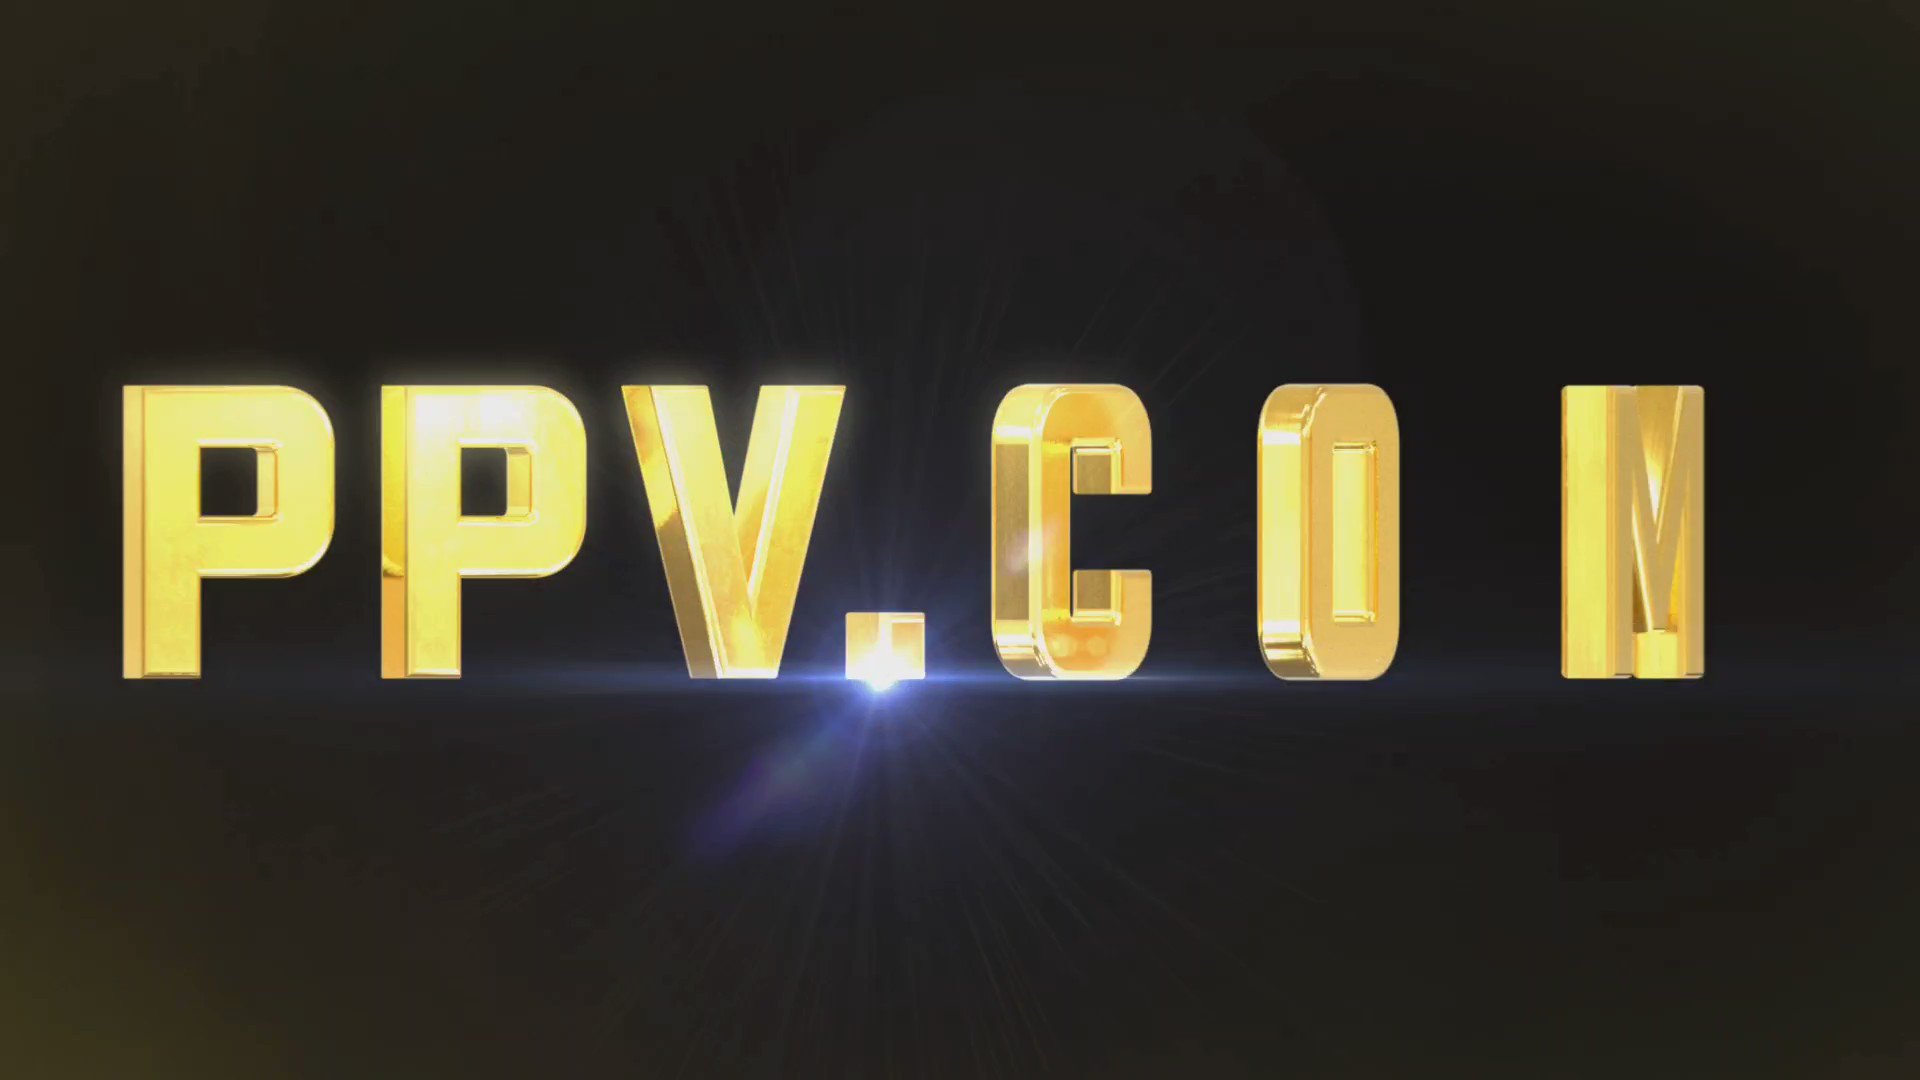 PPV.COM (@ppv_com) • Instagram photos and videos